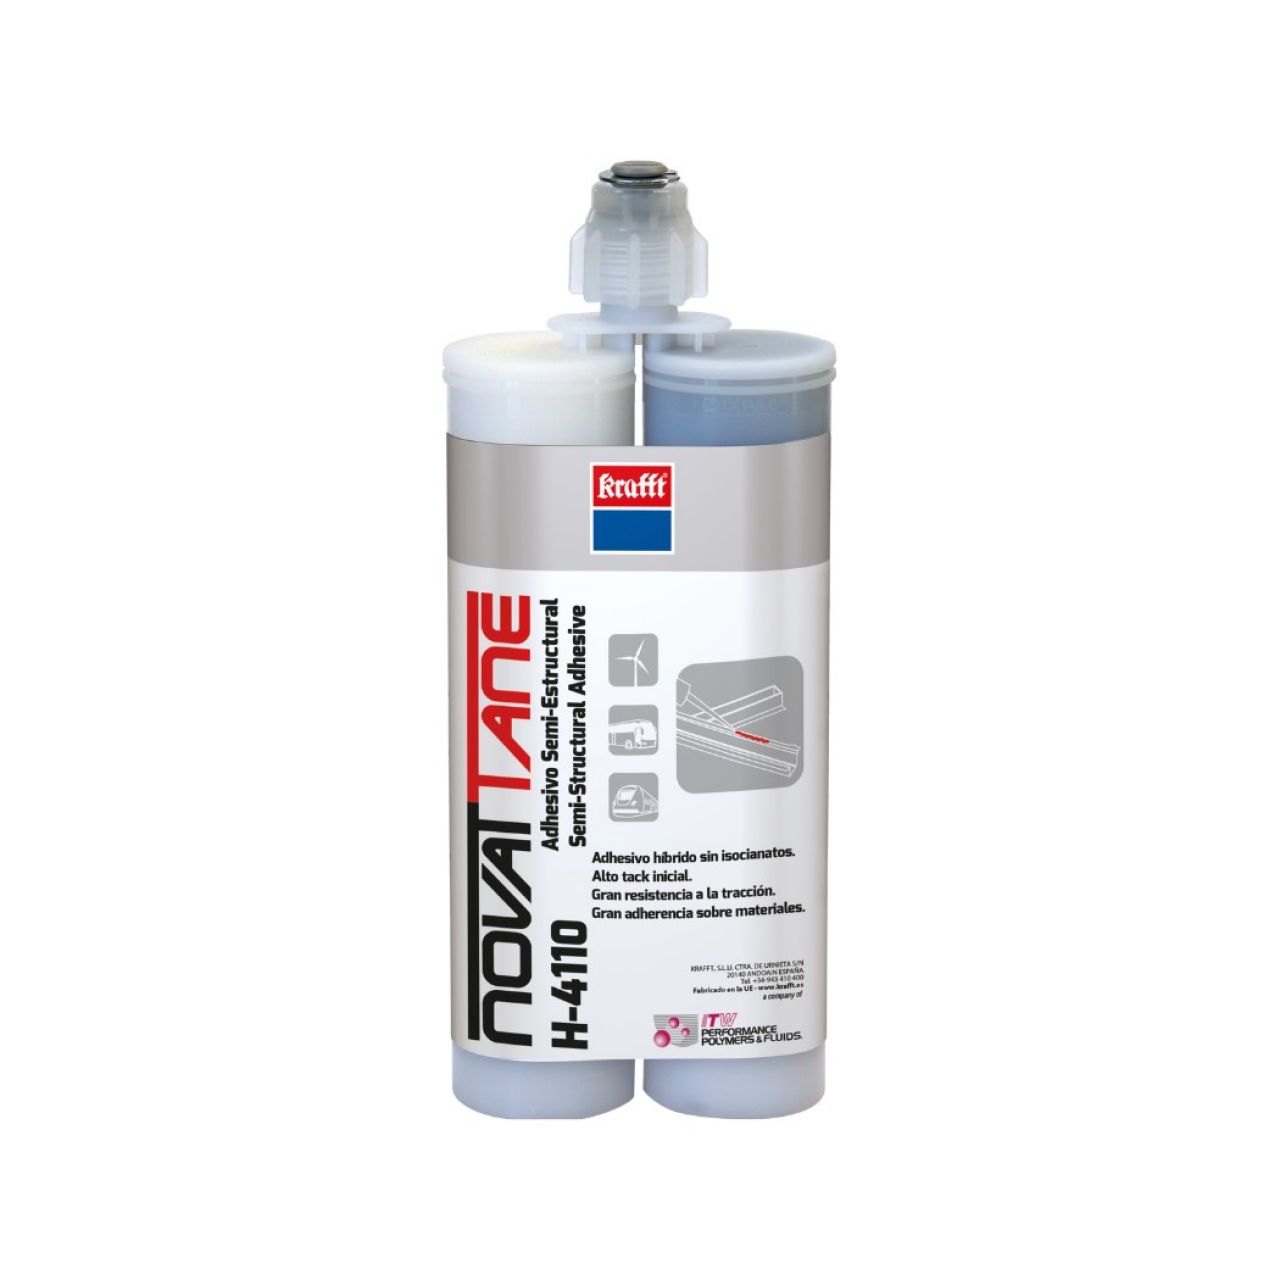 Novattane H-4110 400 ml Color componente A (Adhesivo): blanco.Color componente B (Activador): gris.Color de la mezcla: gris claro. Plástico